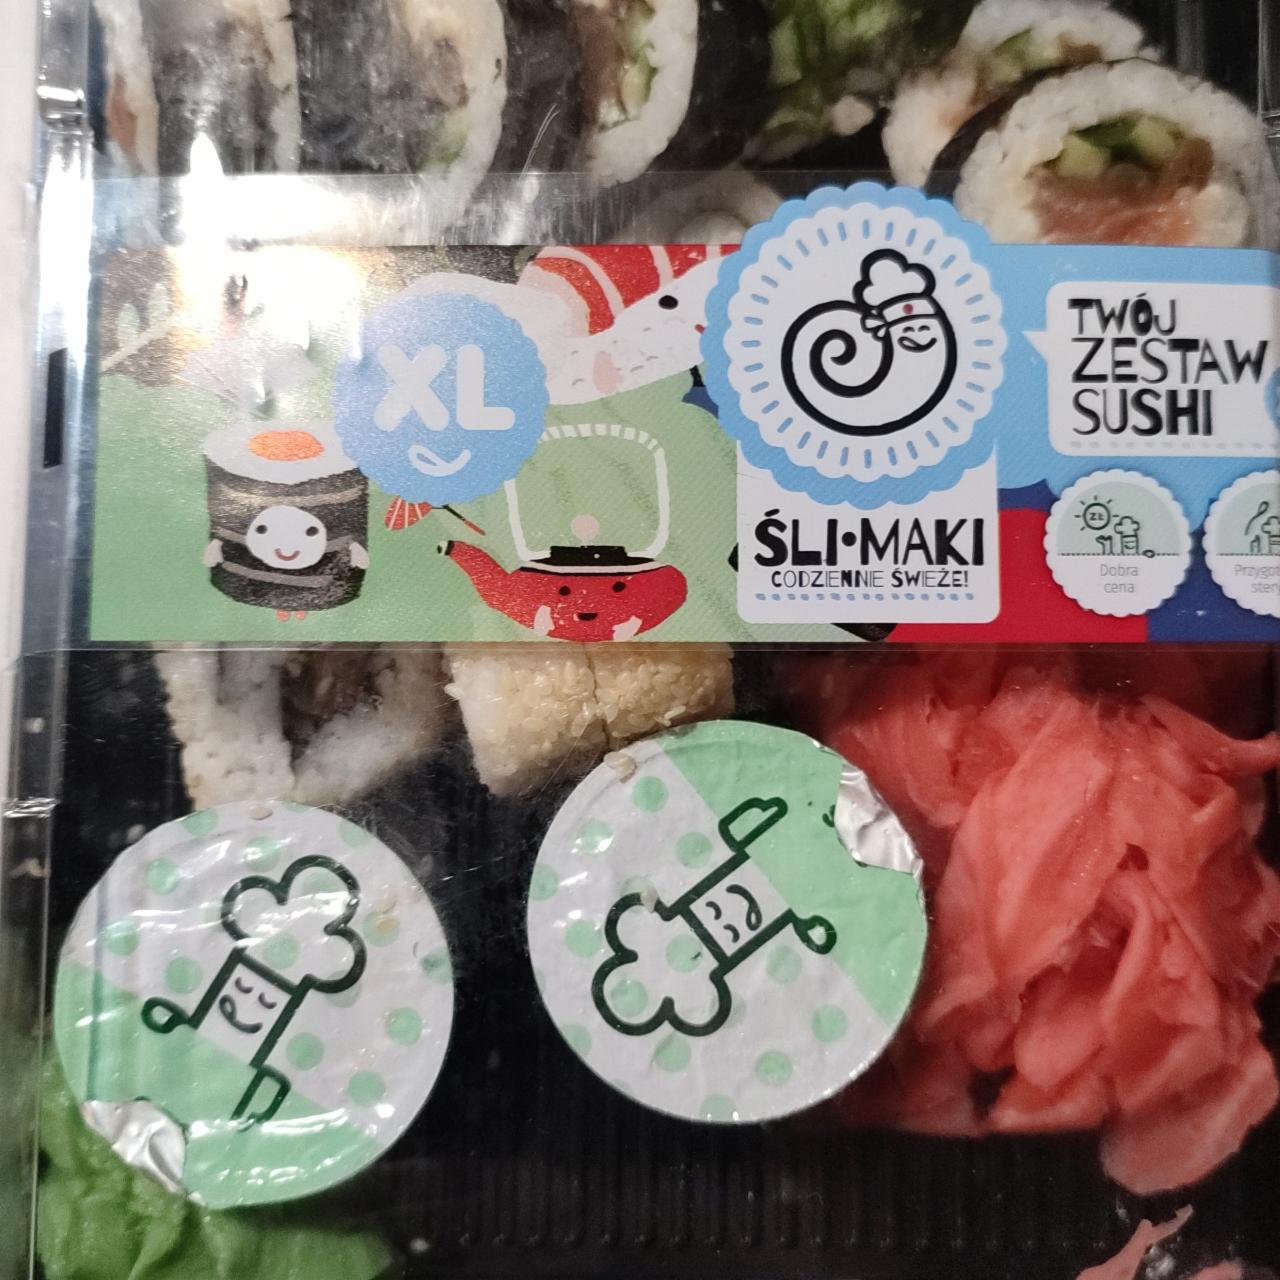 Zdjęcia - Futo Maki Tœój zestaw sushi Ślimak